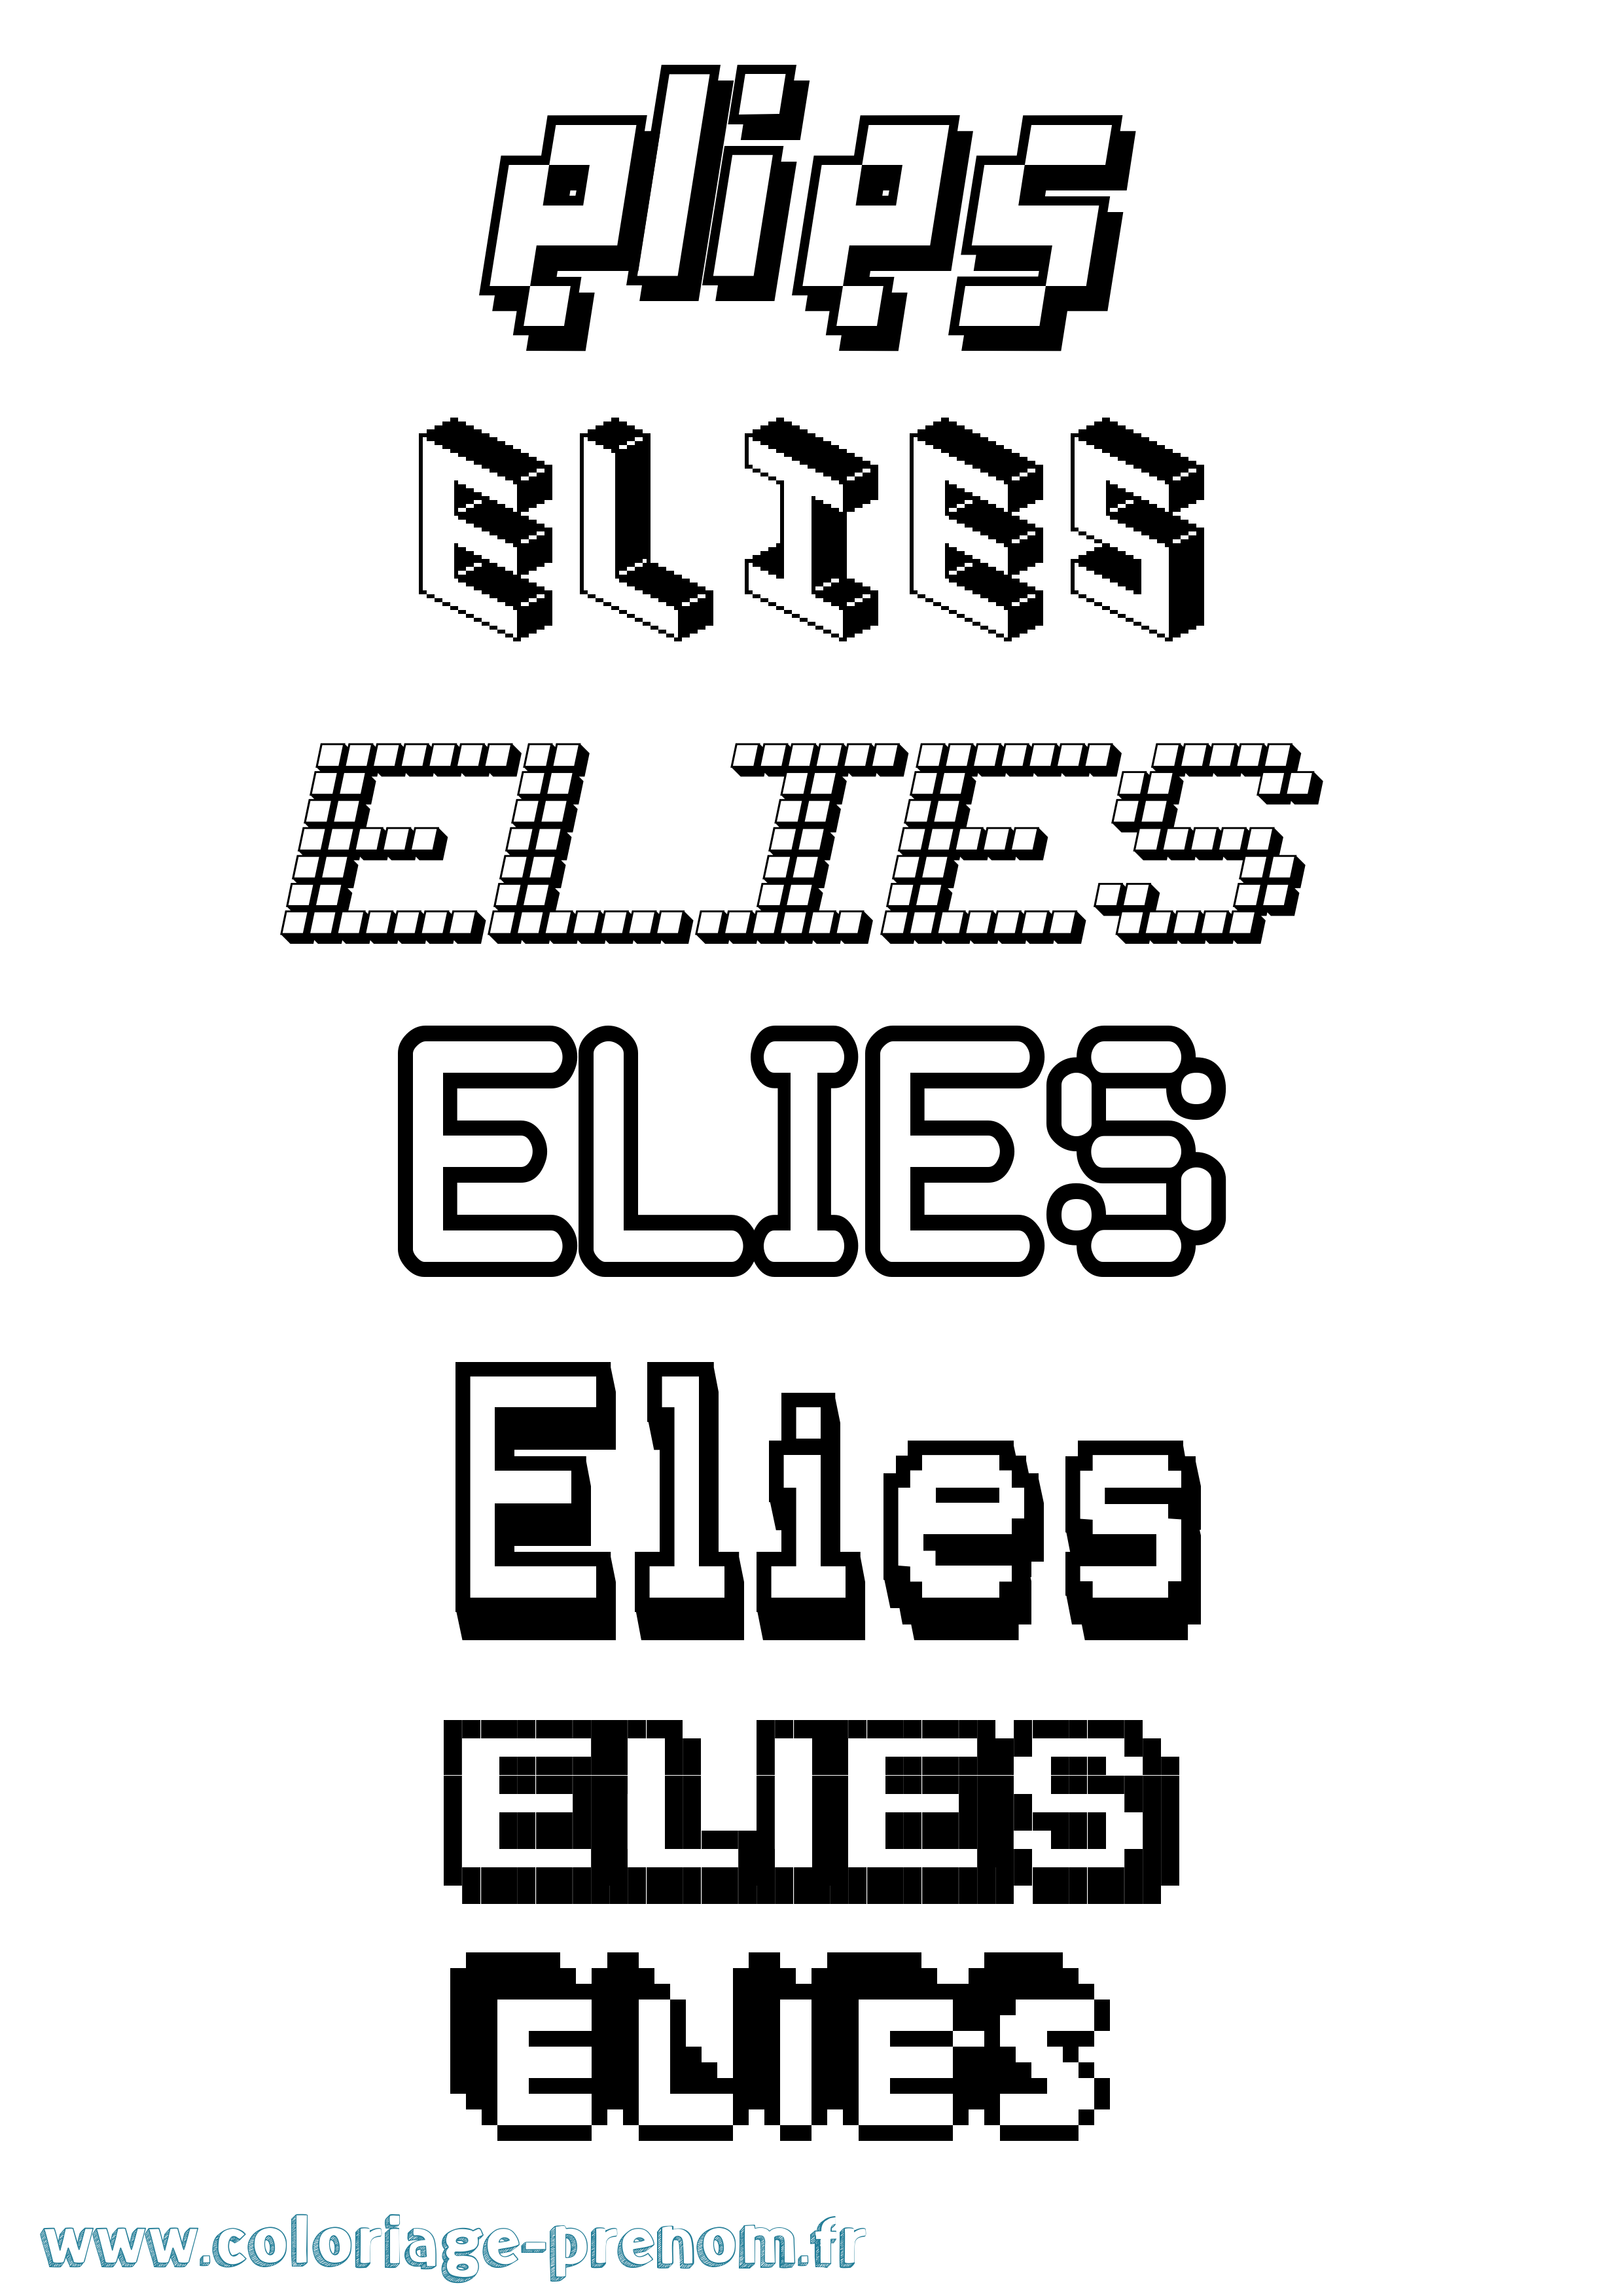 Coloriage prénom Elies Pixel